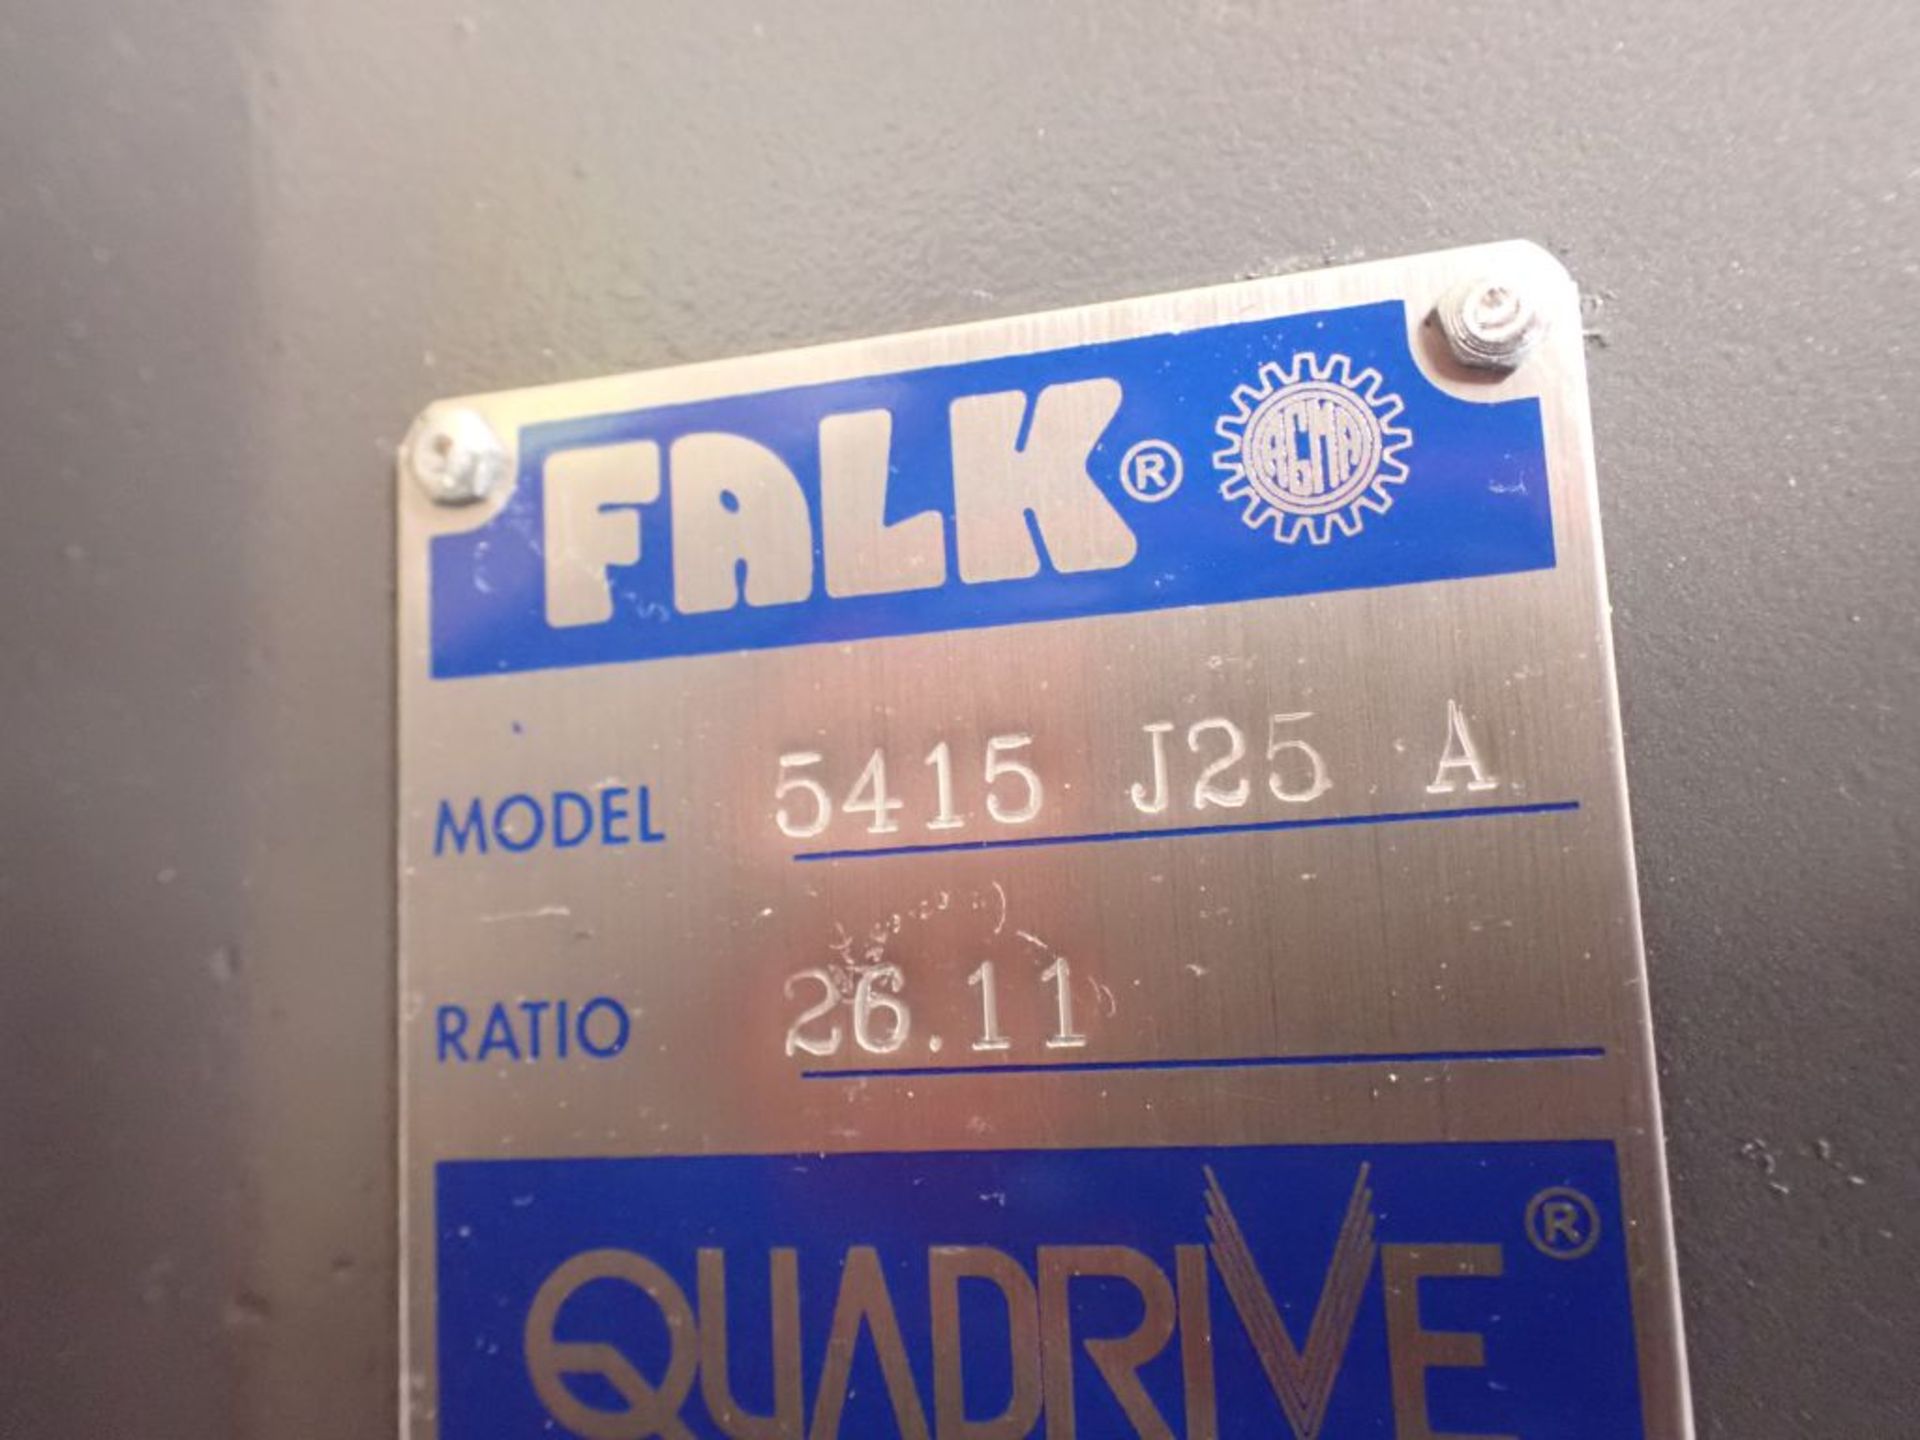 Falk Enclosed Gear Drive w/Components - Model No. 5415 J25 A ; 26.11 Ratio; Tag: 215684 - Image 21 of 21